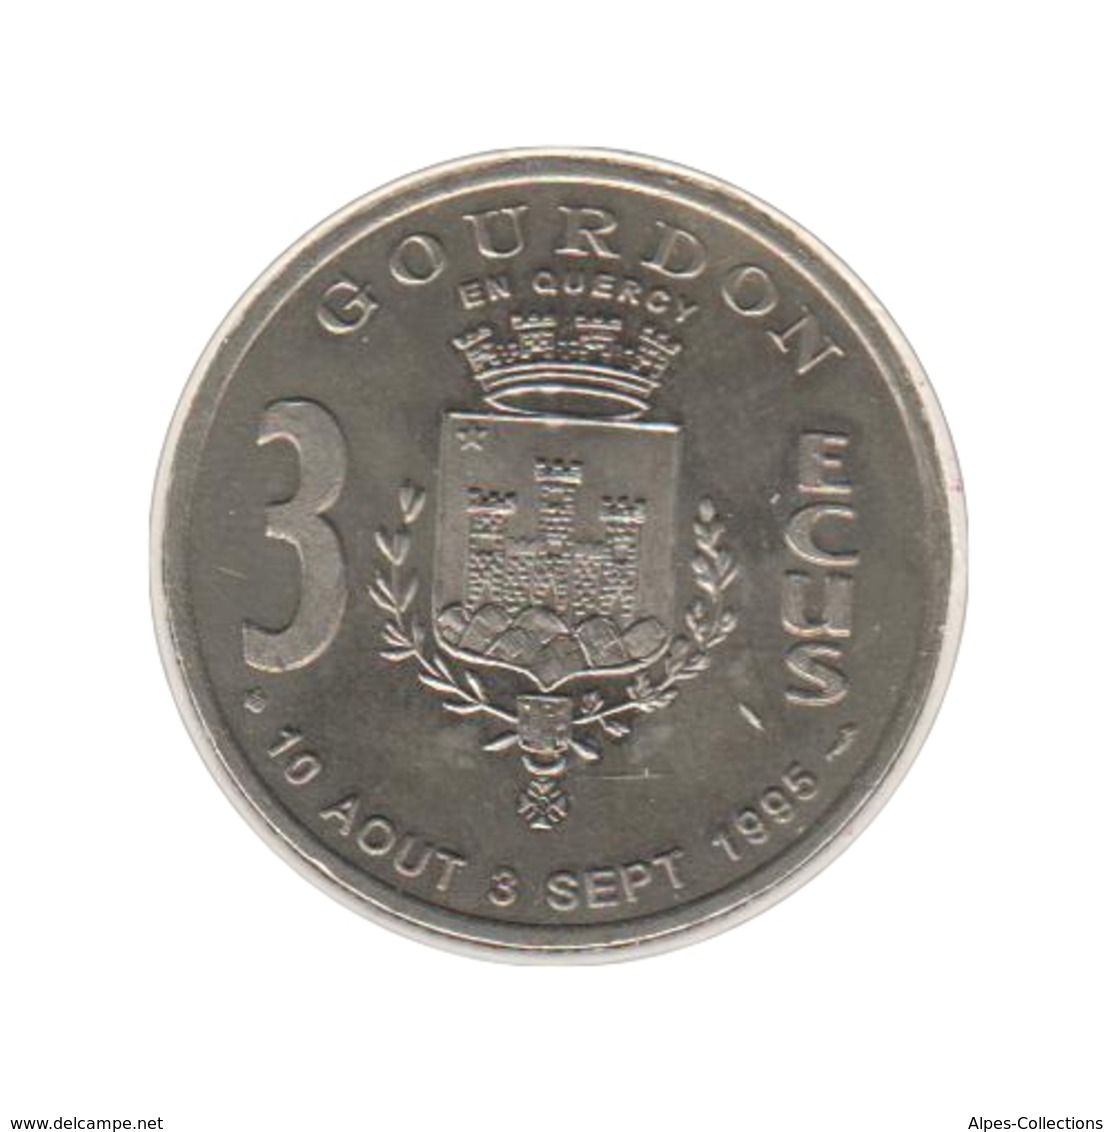 GOURDON - EC0030.1 - 3 ECU DES VILLES - Réf: T63 - 1995 - Euros Of The Cities